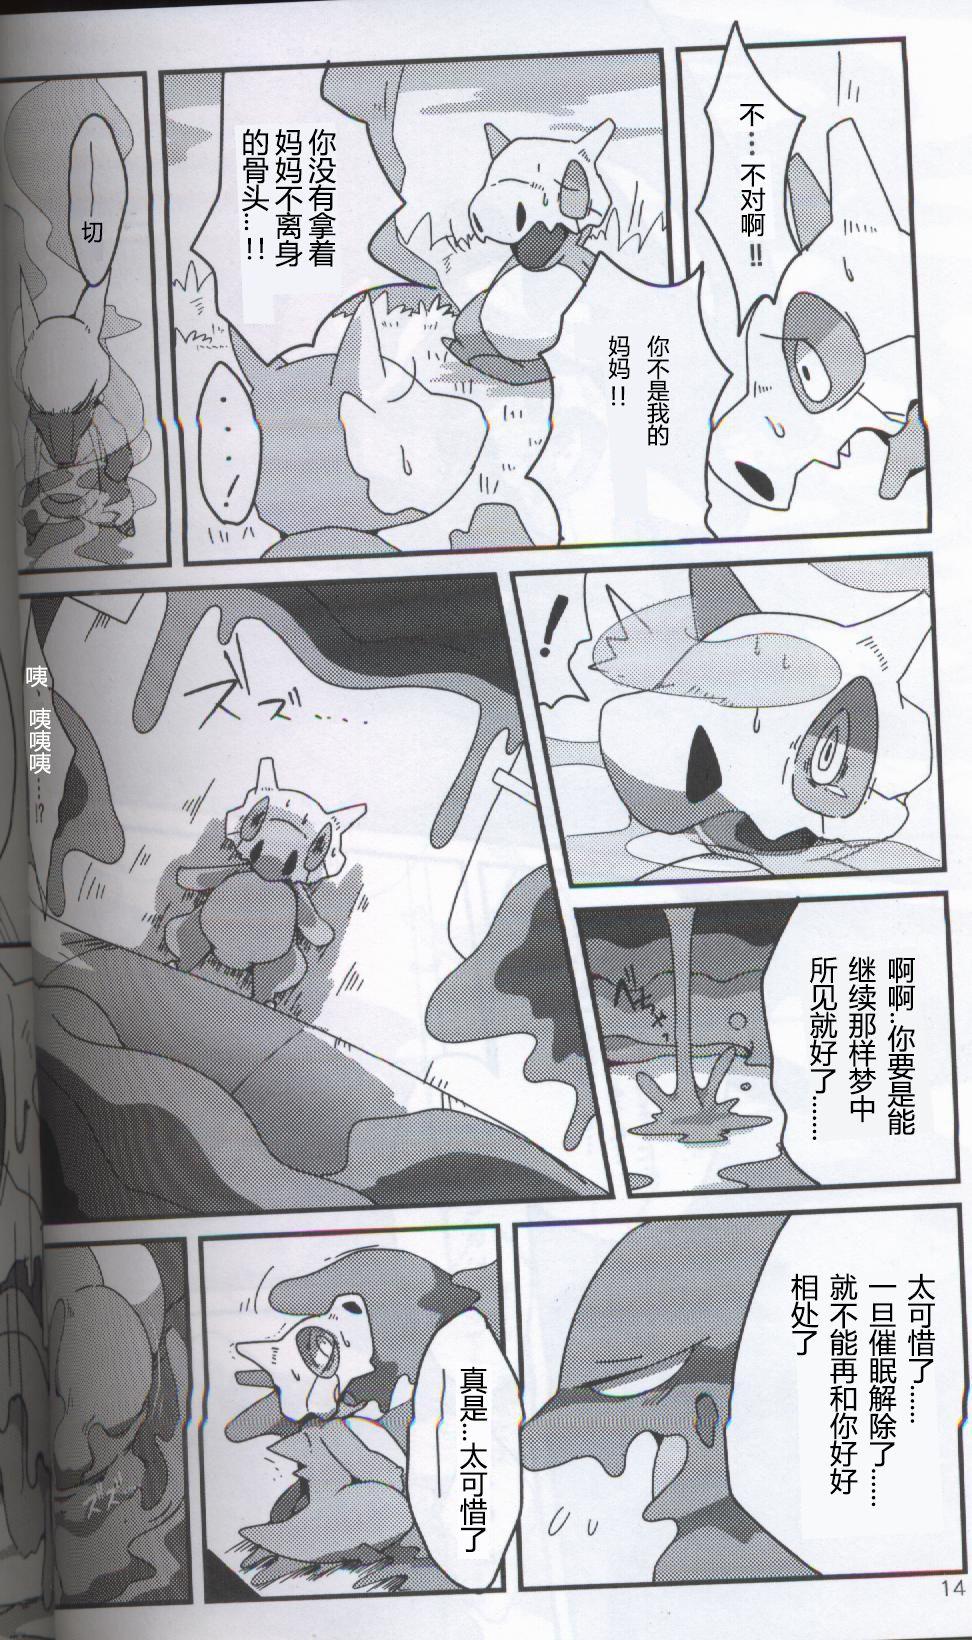 Gaybukkake TEARDROPS - Pokemon Bj - Page 9